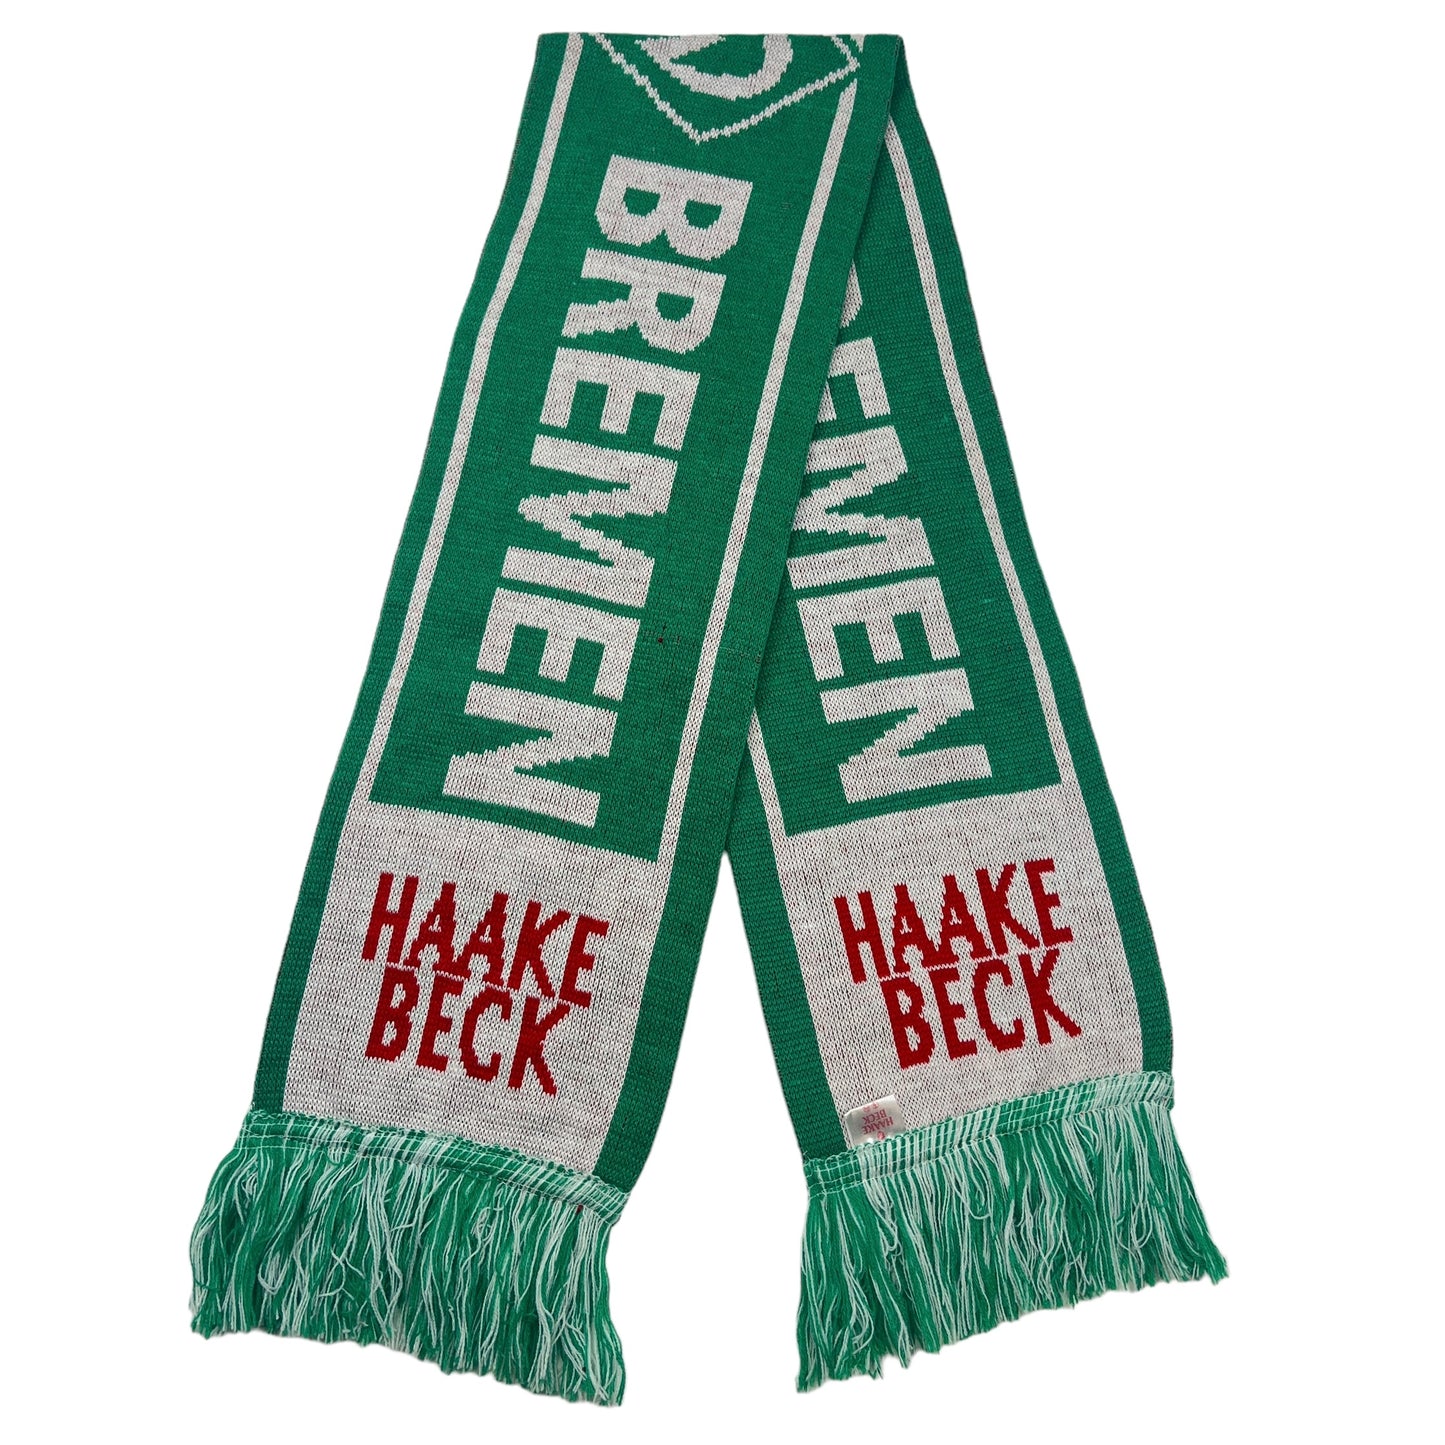 01857 Werder Bremen 80s Haake Beck Scarf